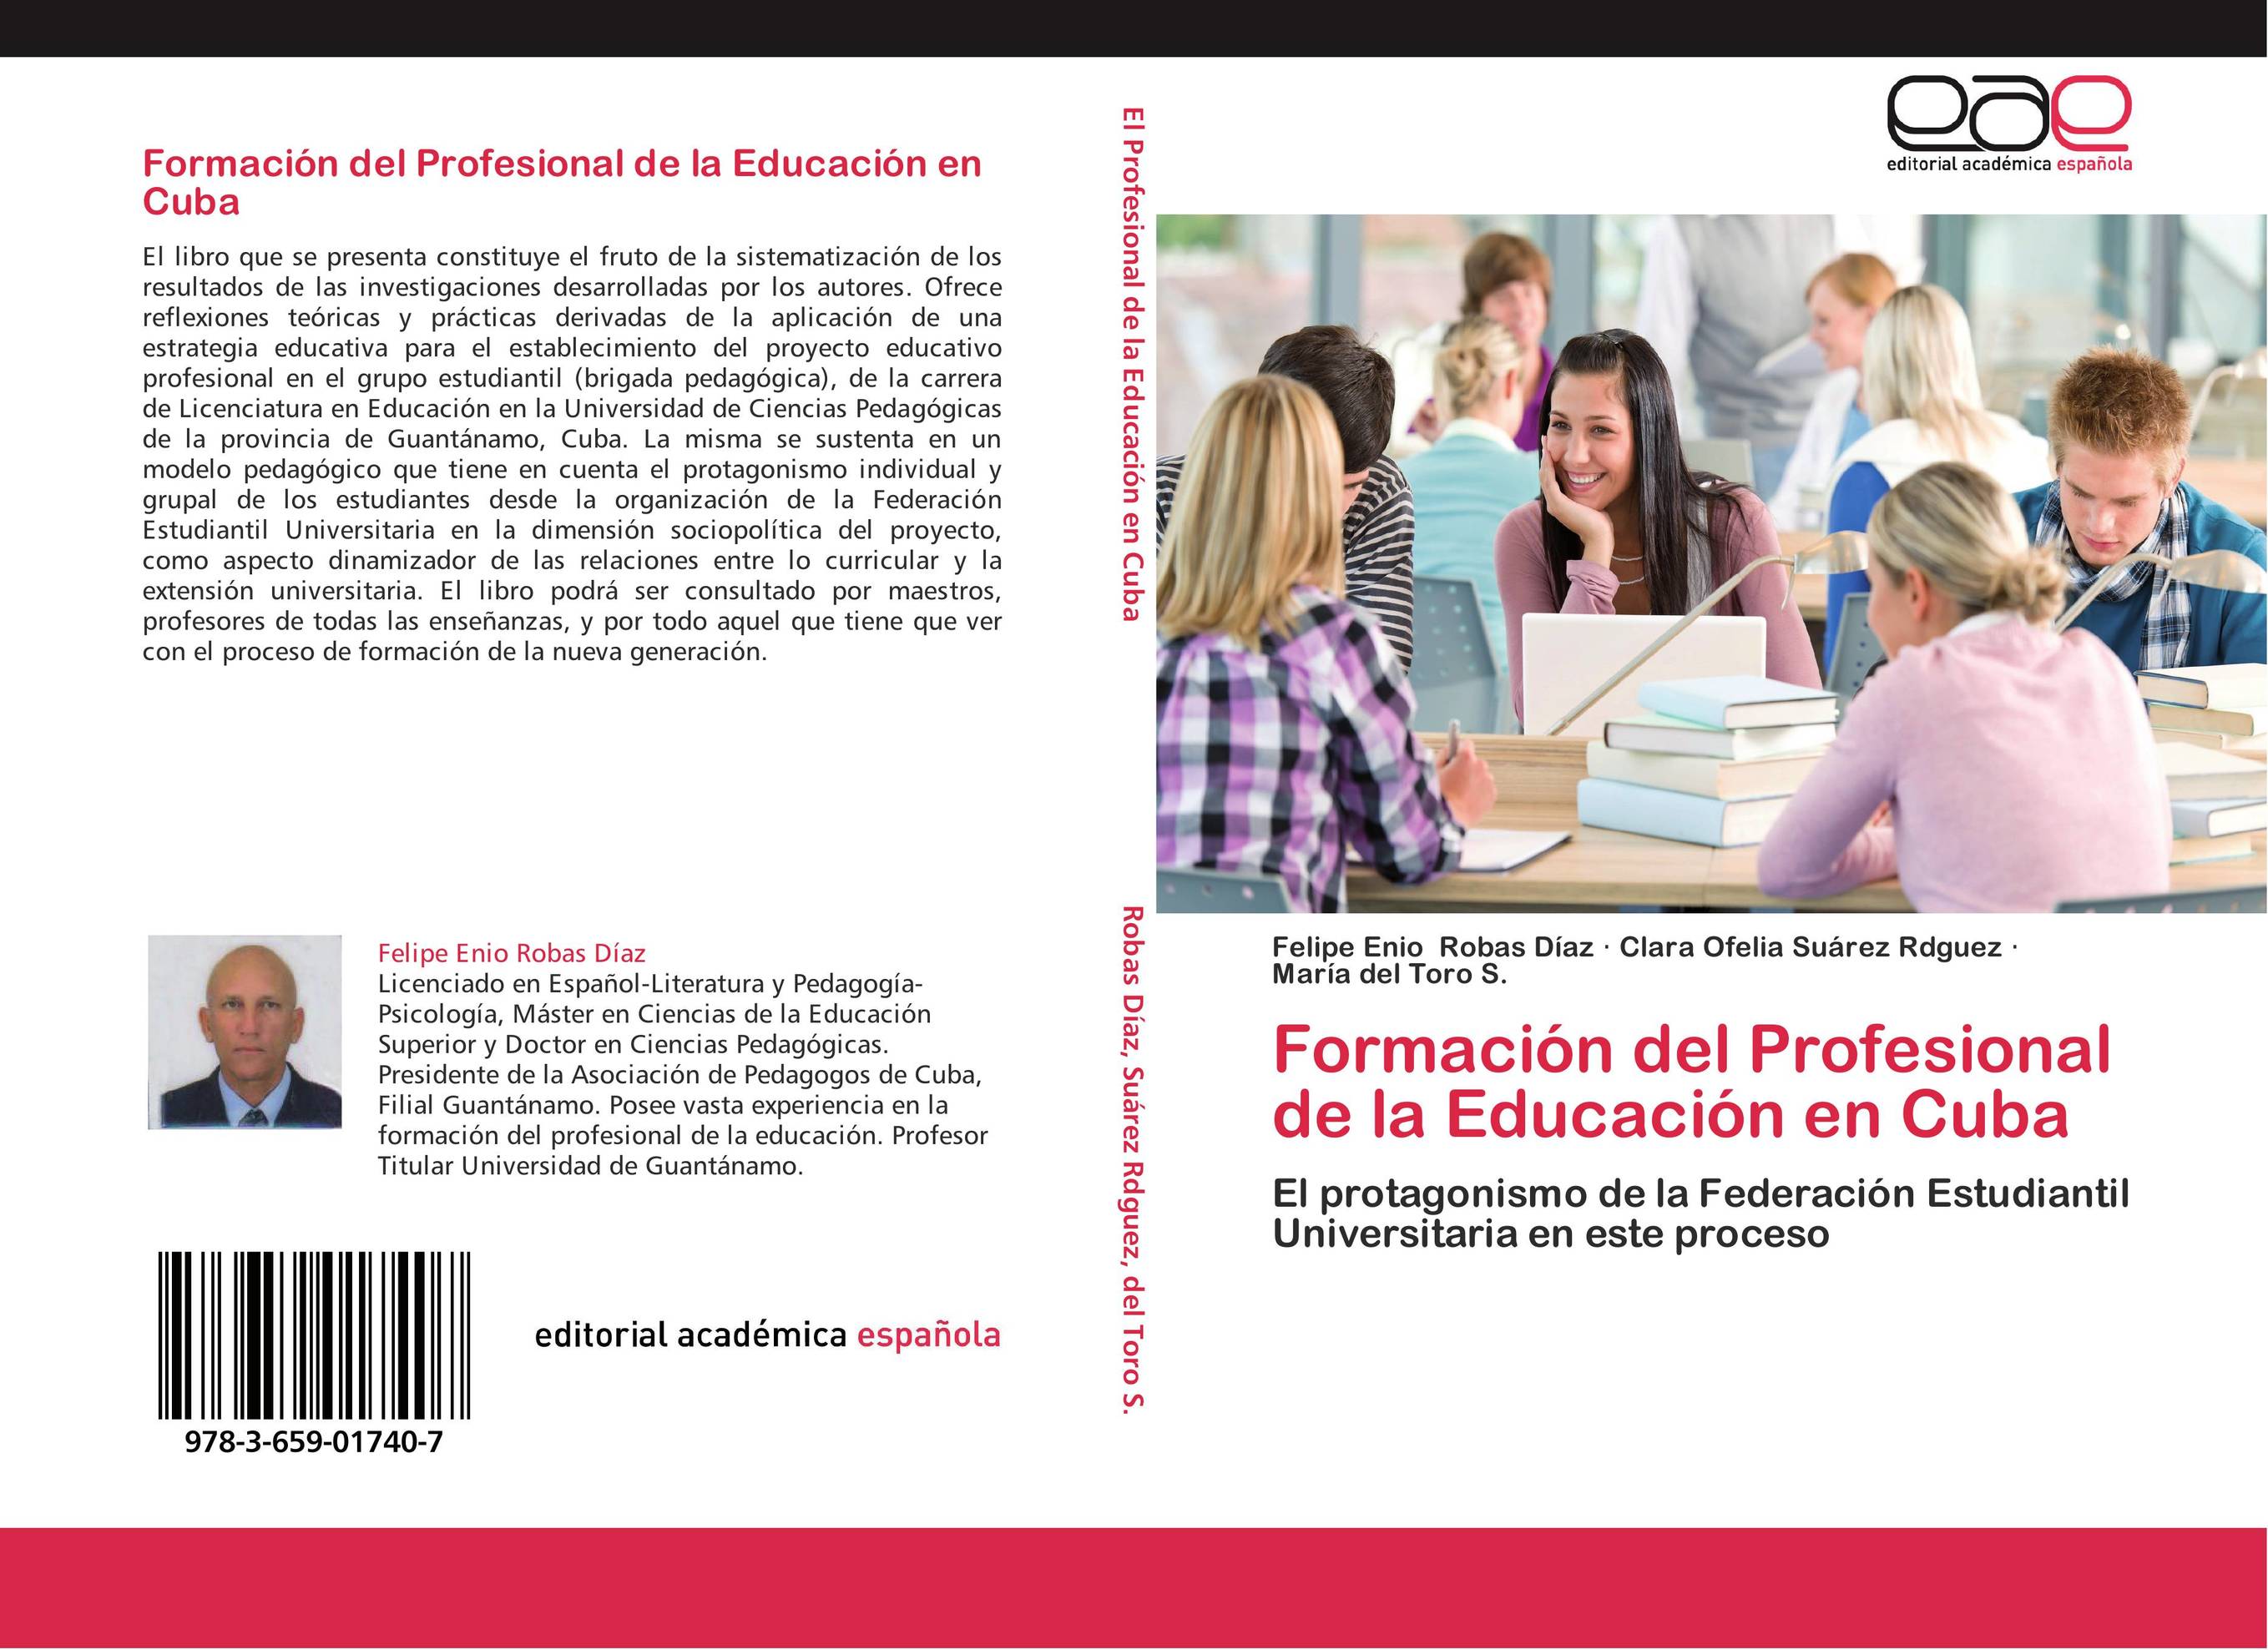 Formación del Profesional de la Educación en Cuba